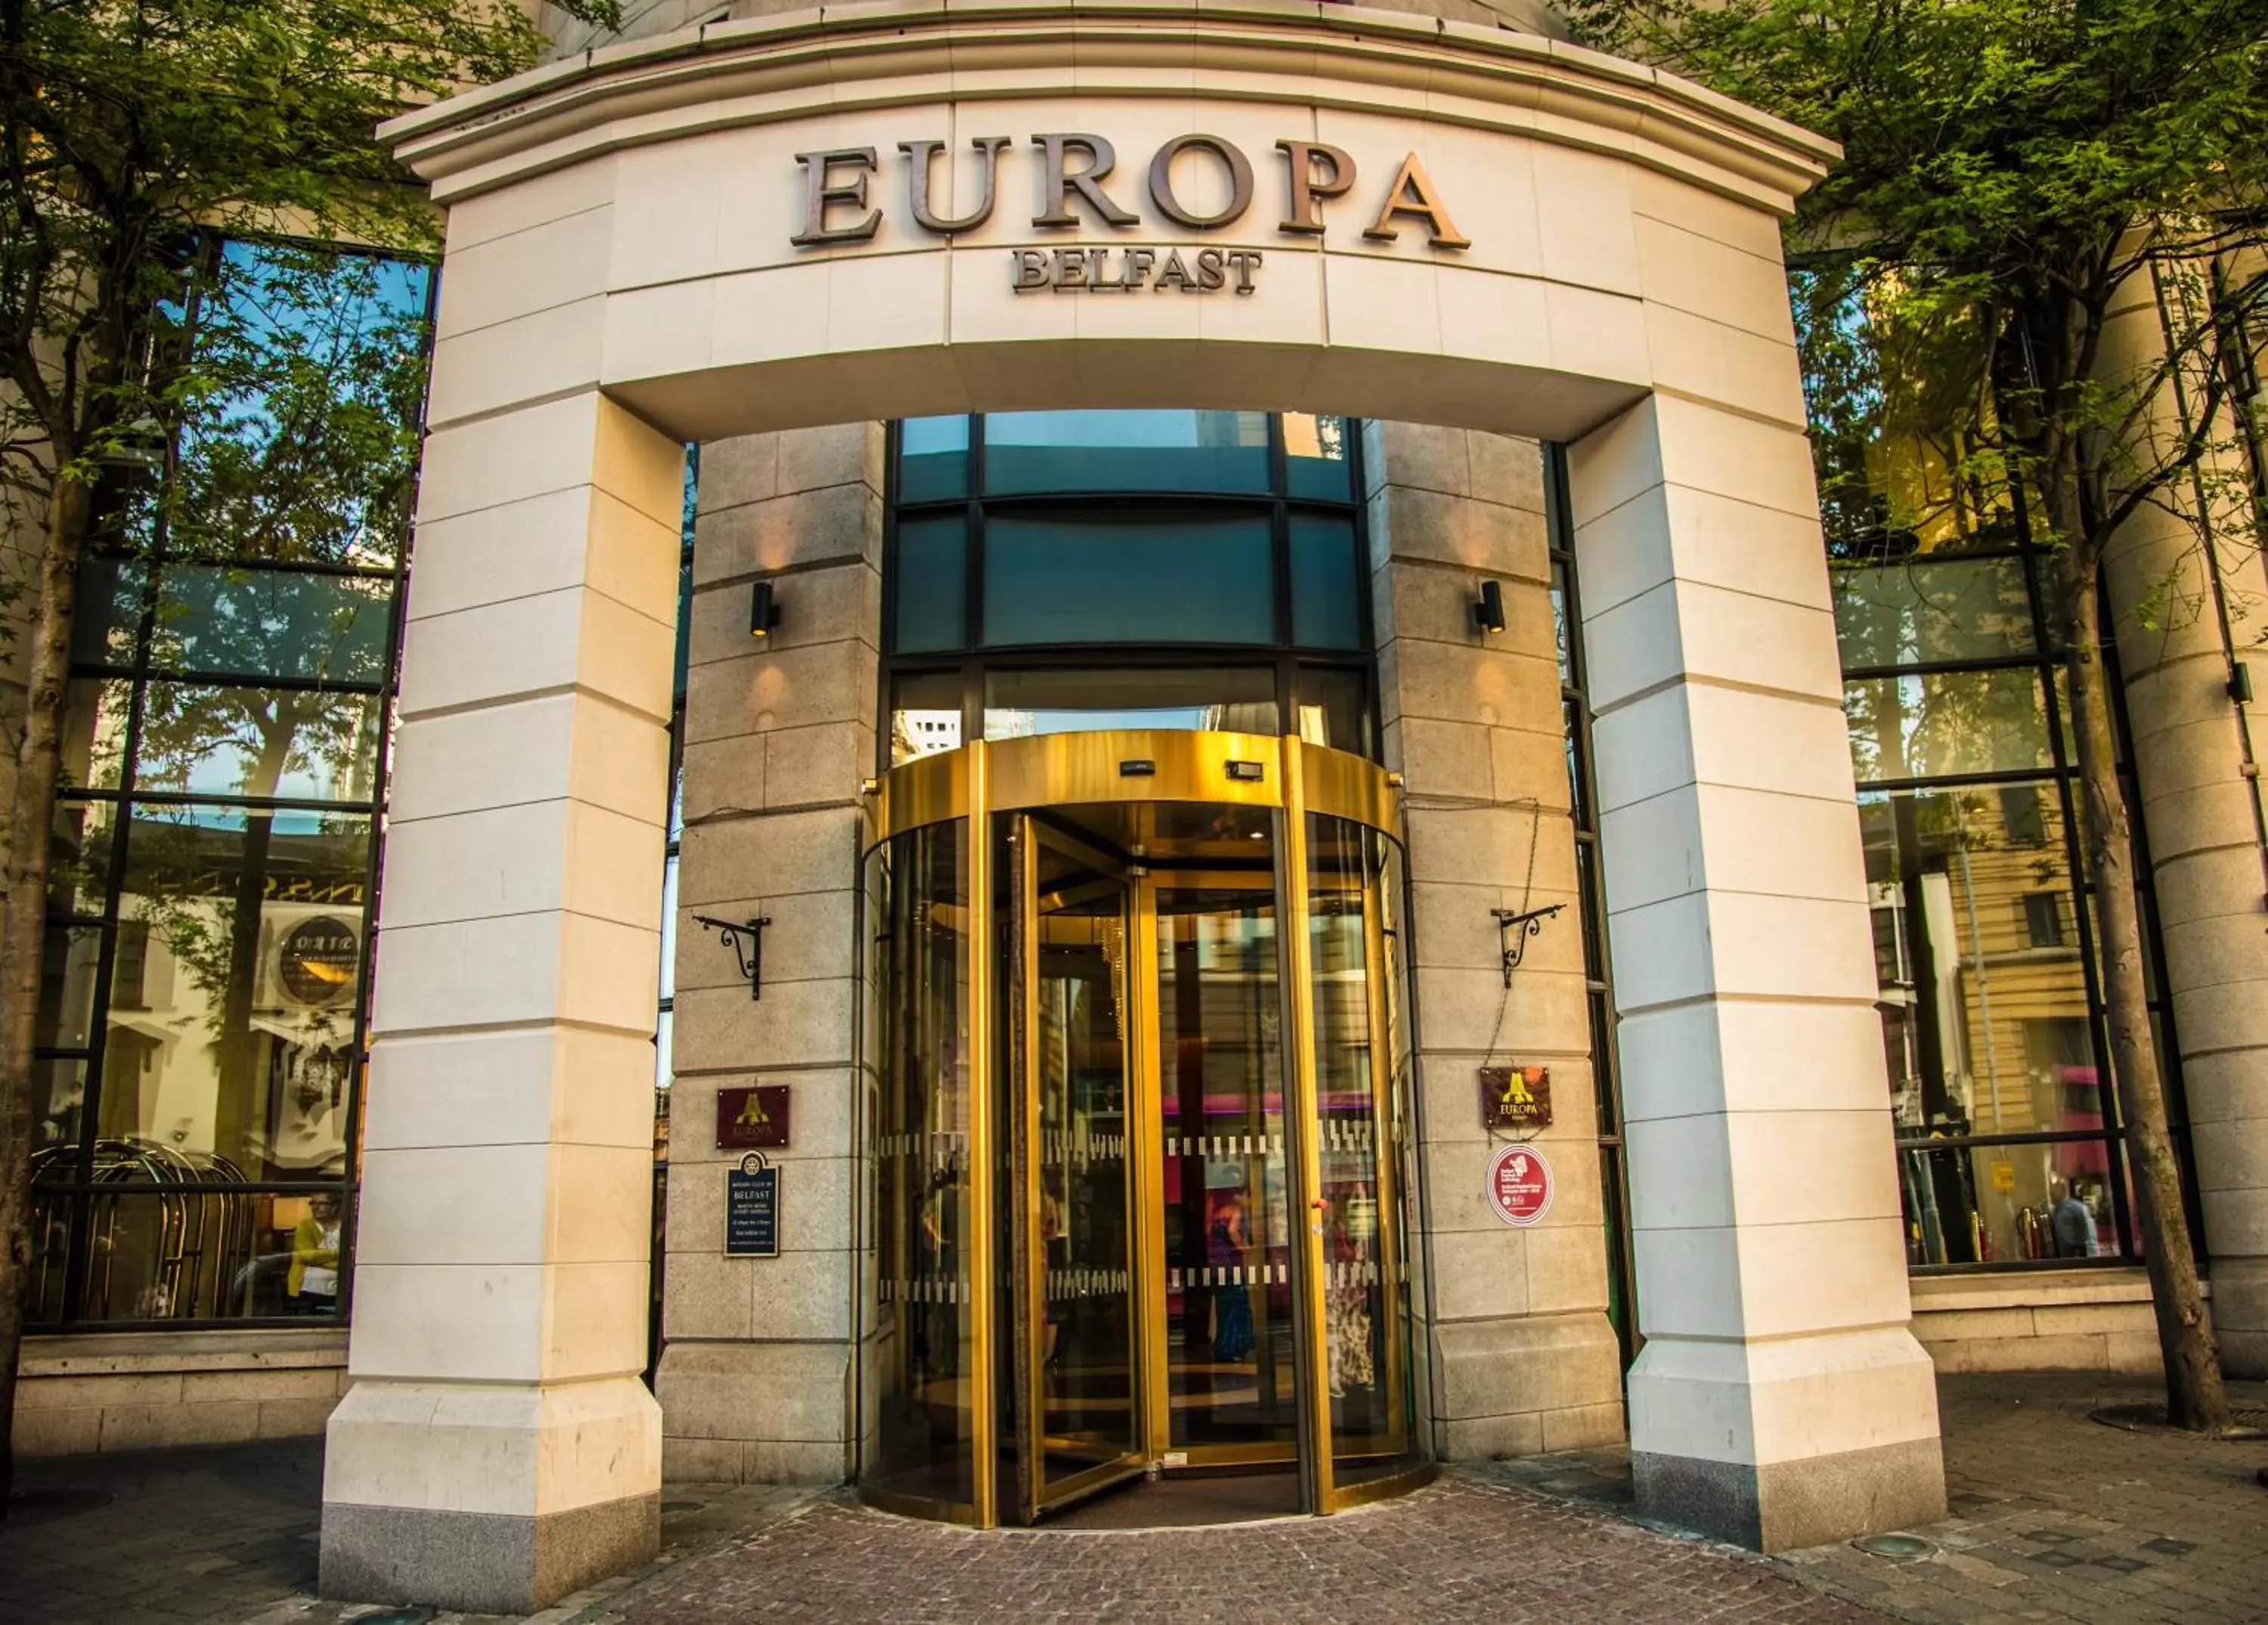 Facade/entrance in Europa Hotel